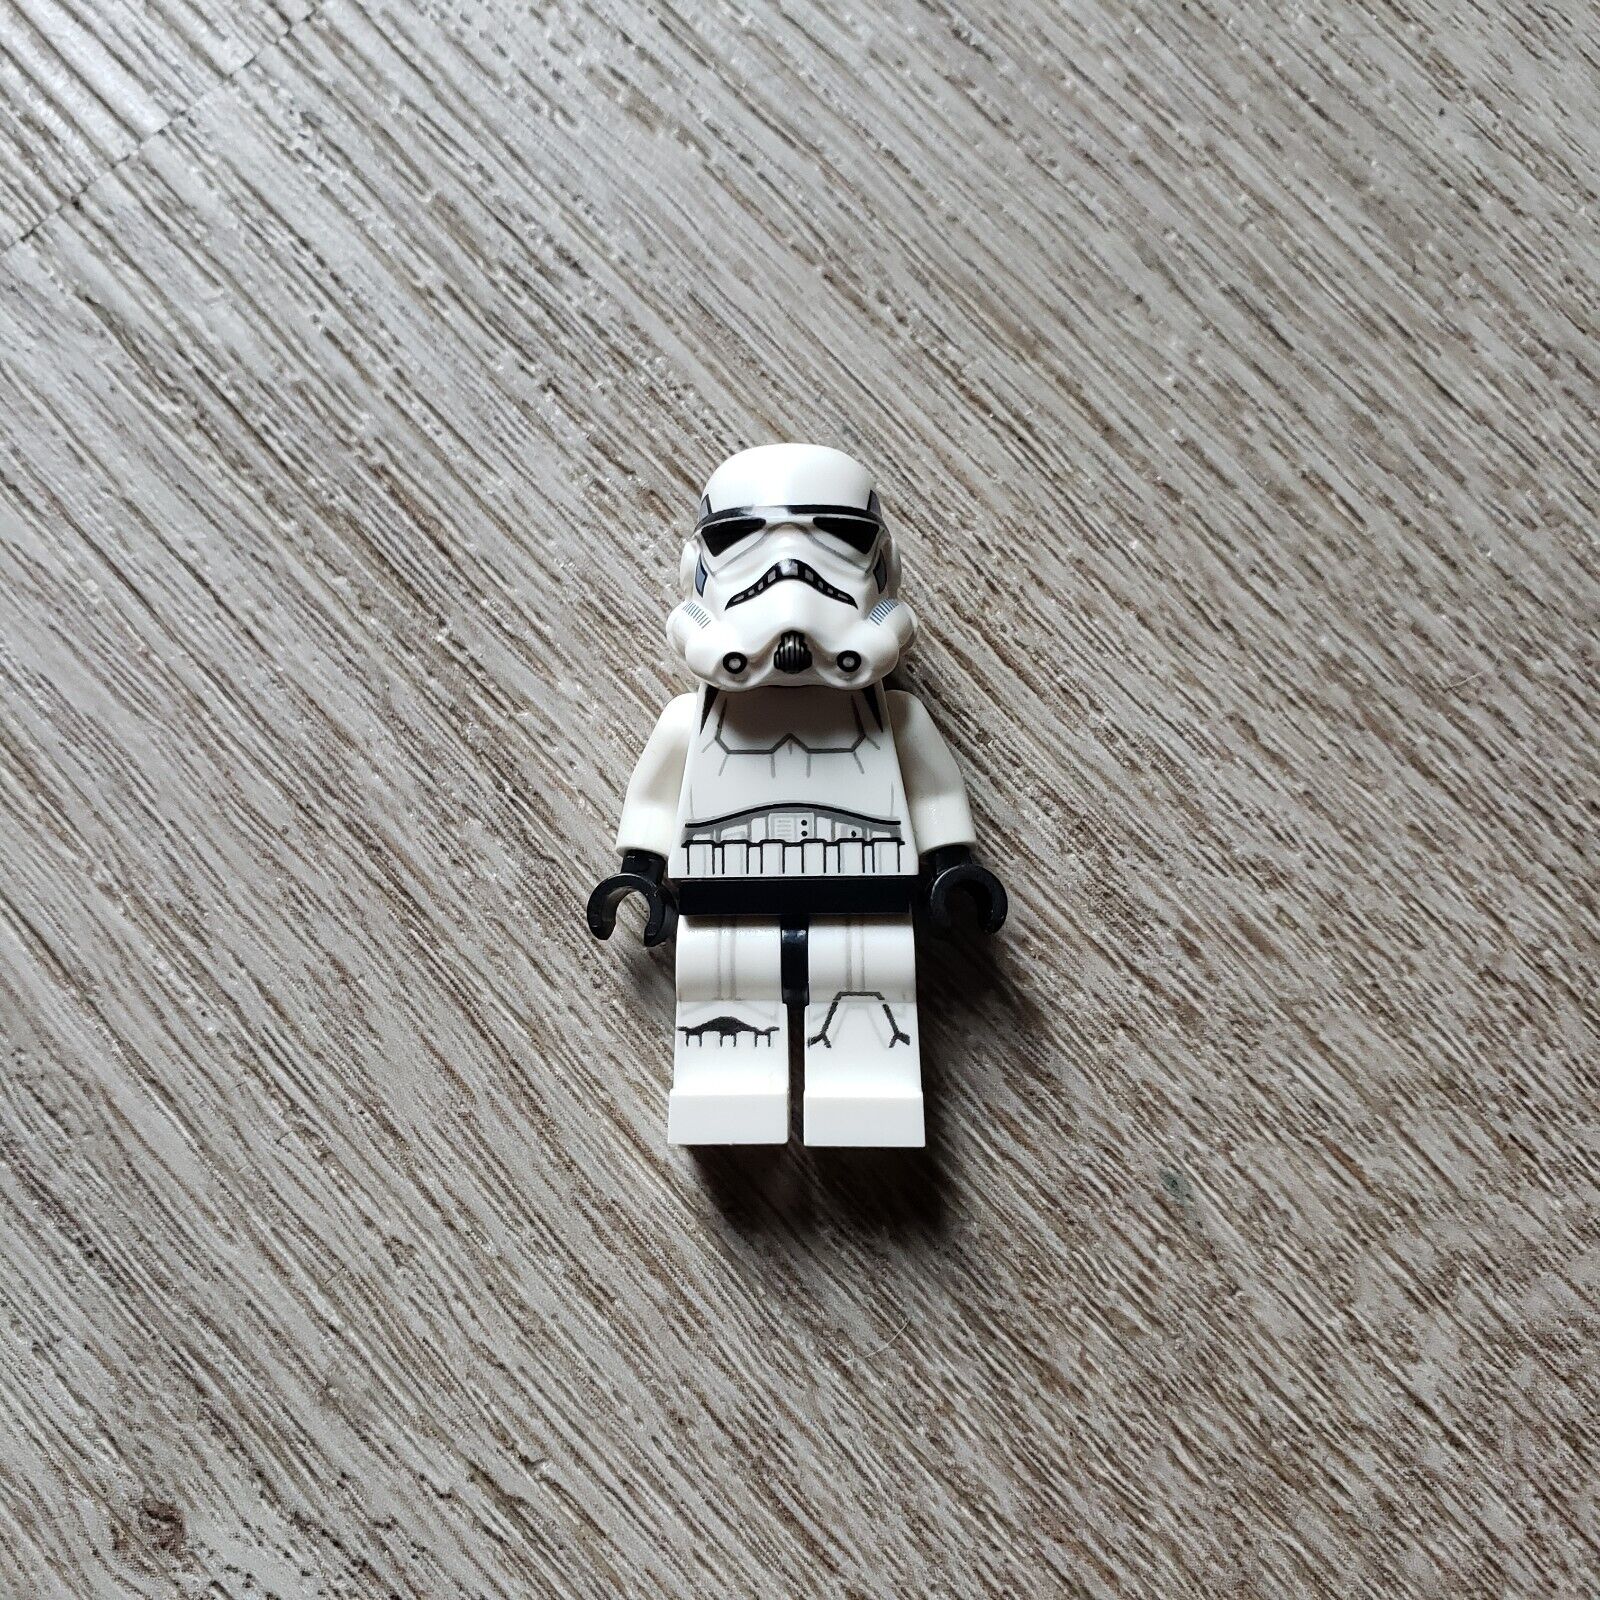 Lego Star Wars Stormtrooper (Printed Legs, Dark Azure Helmet Vents) sw0578